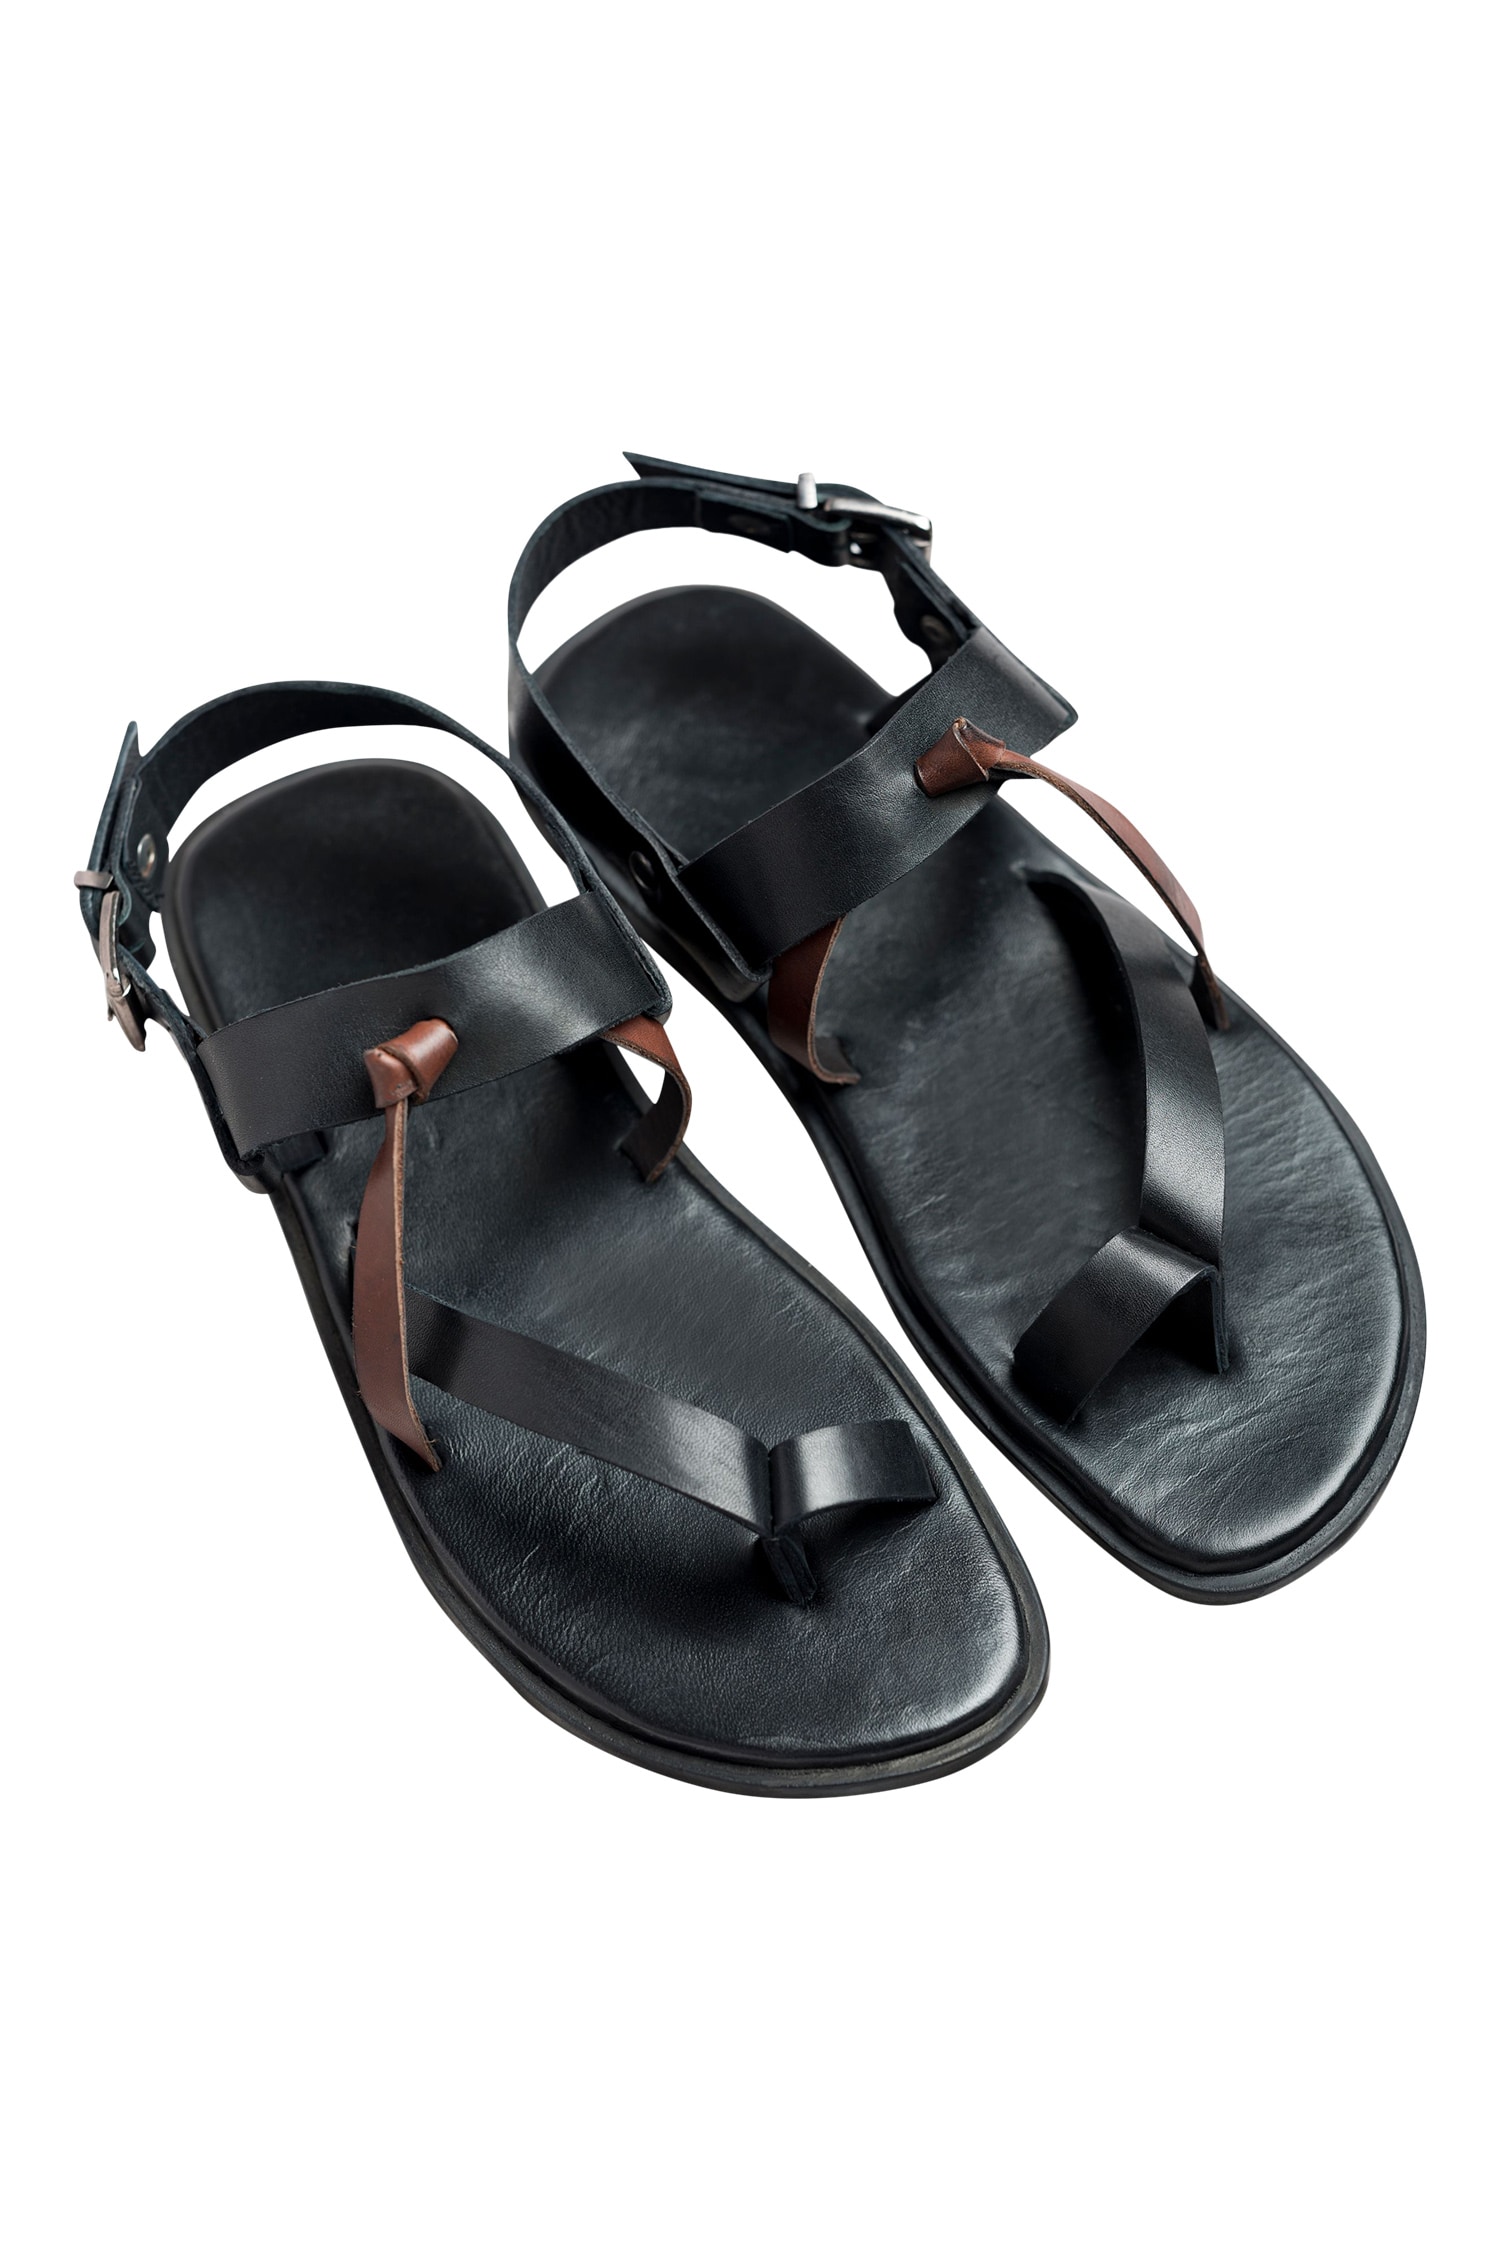 Dmodot Black Leather Ankle Back Strap Sandals